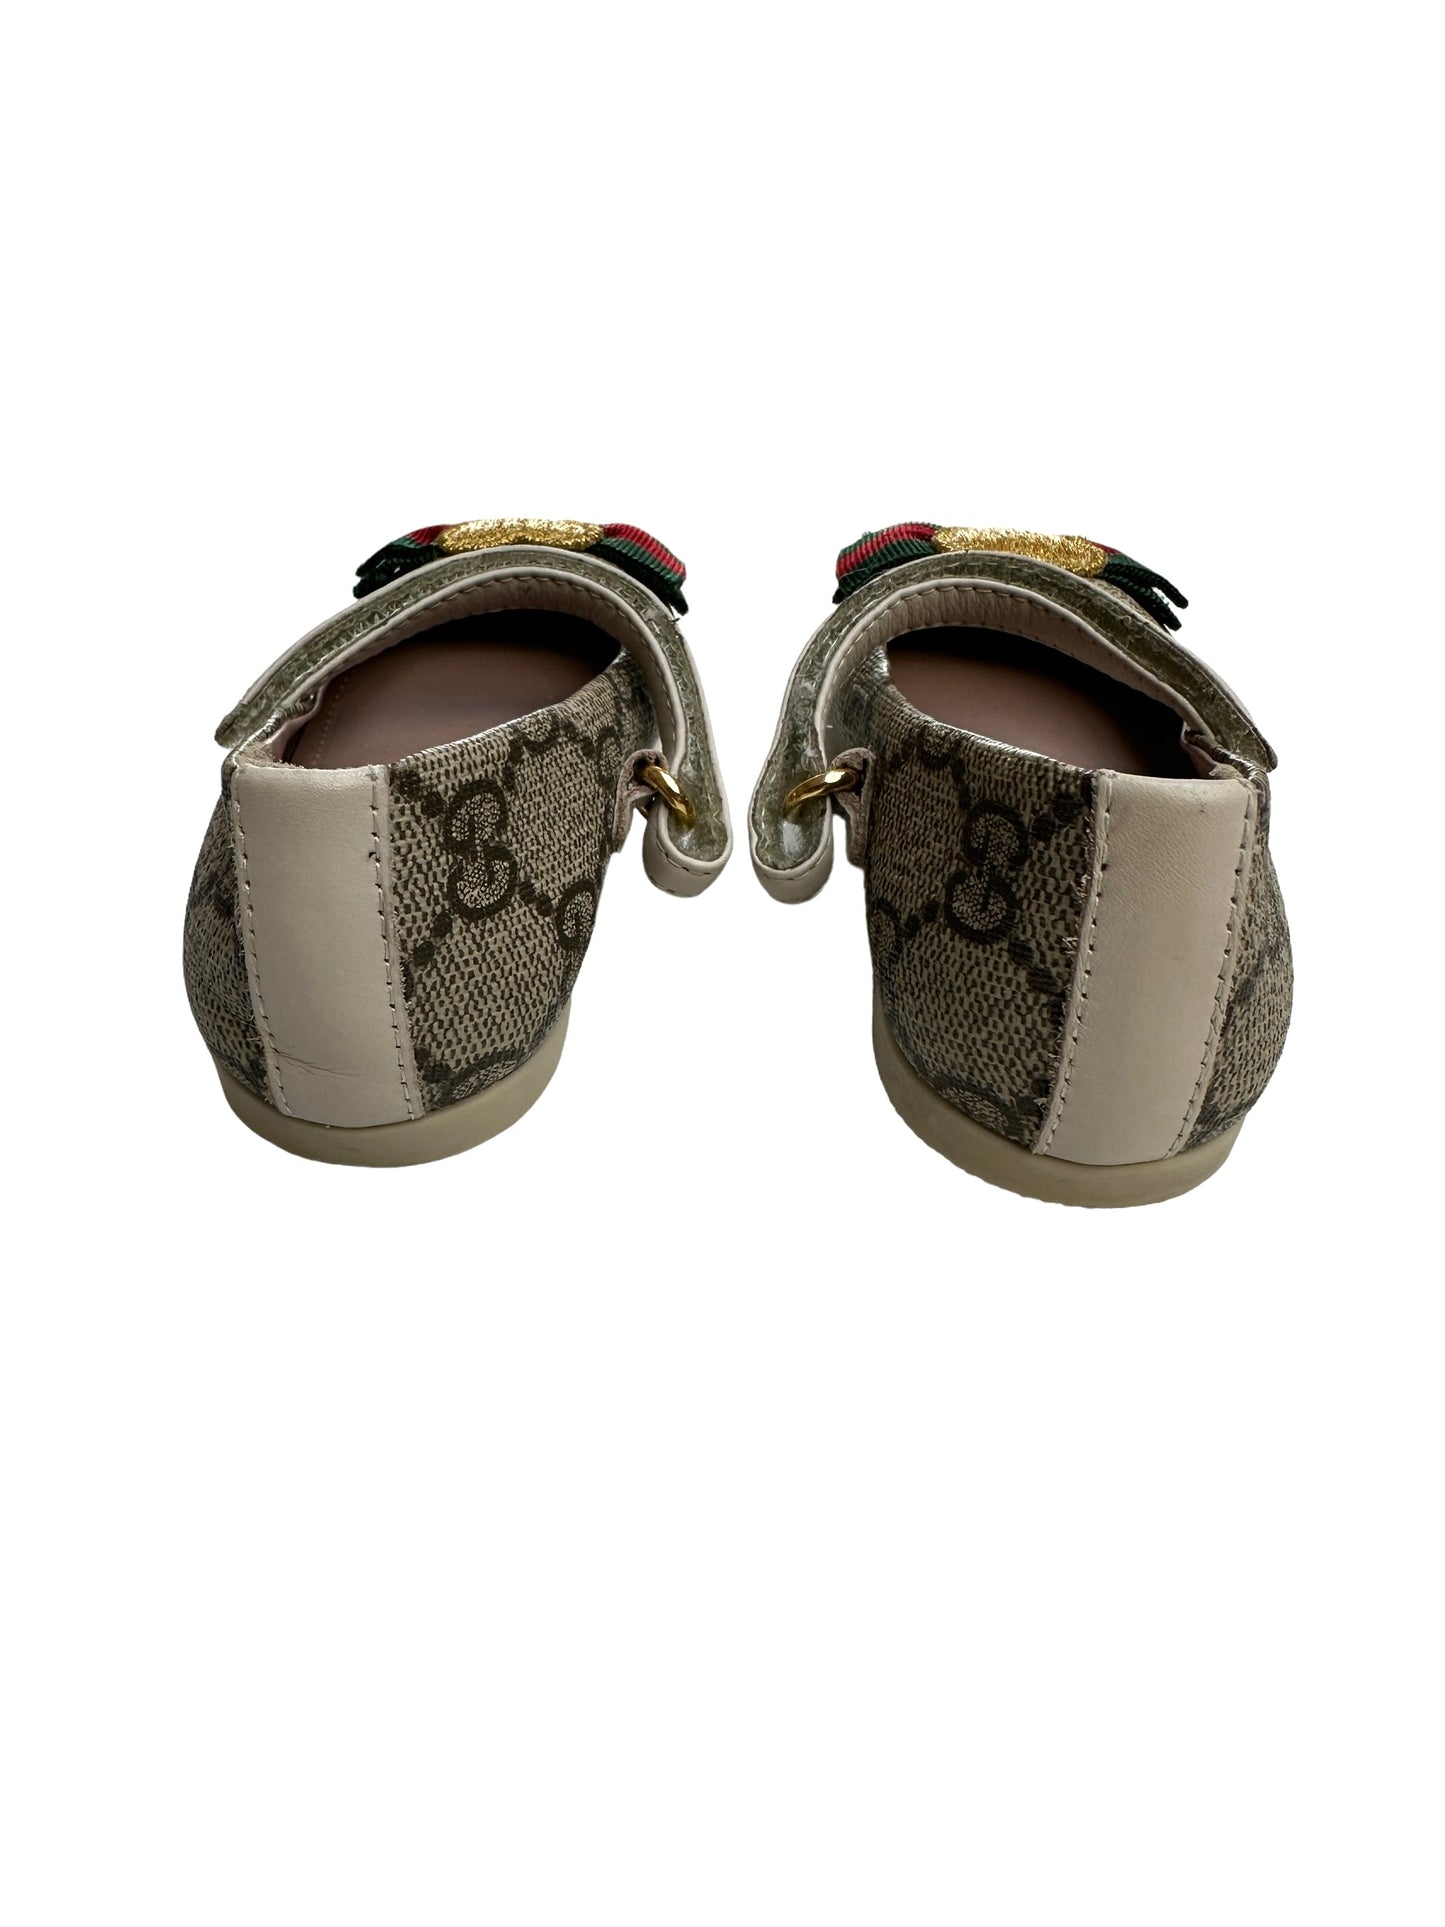 GG Monogram Toddler Shoes - 20